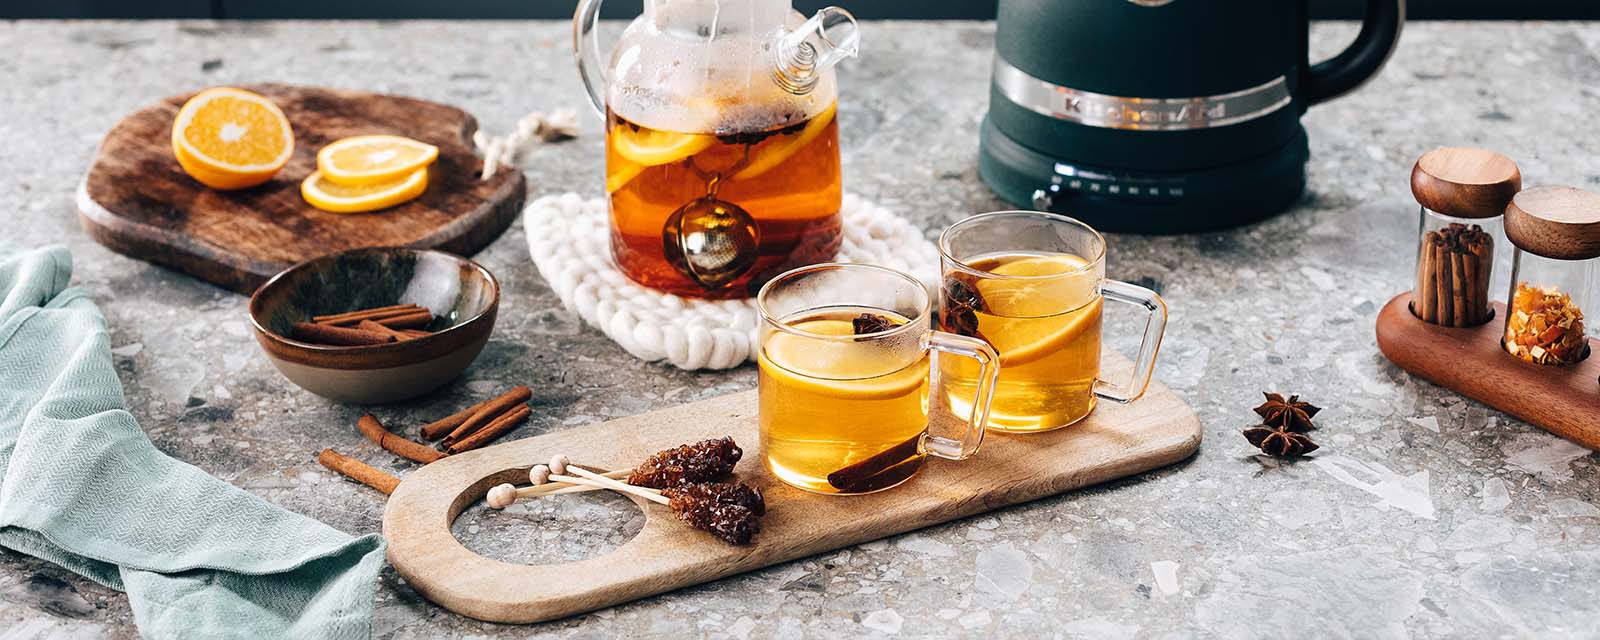 Import-Recipe - Winter tea